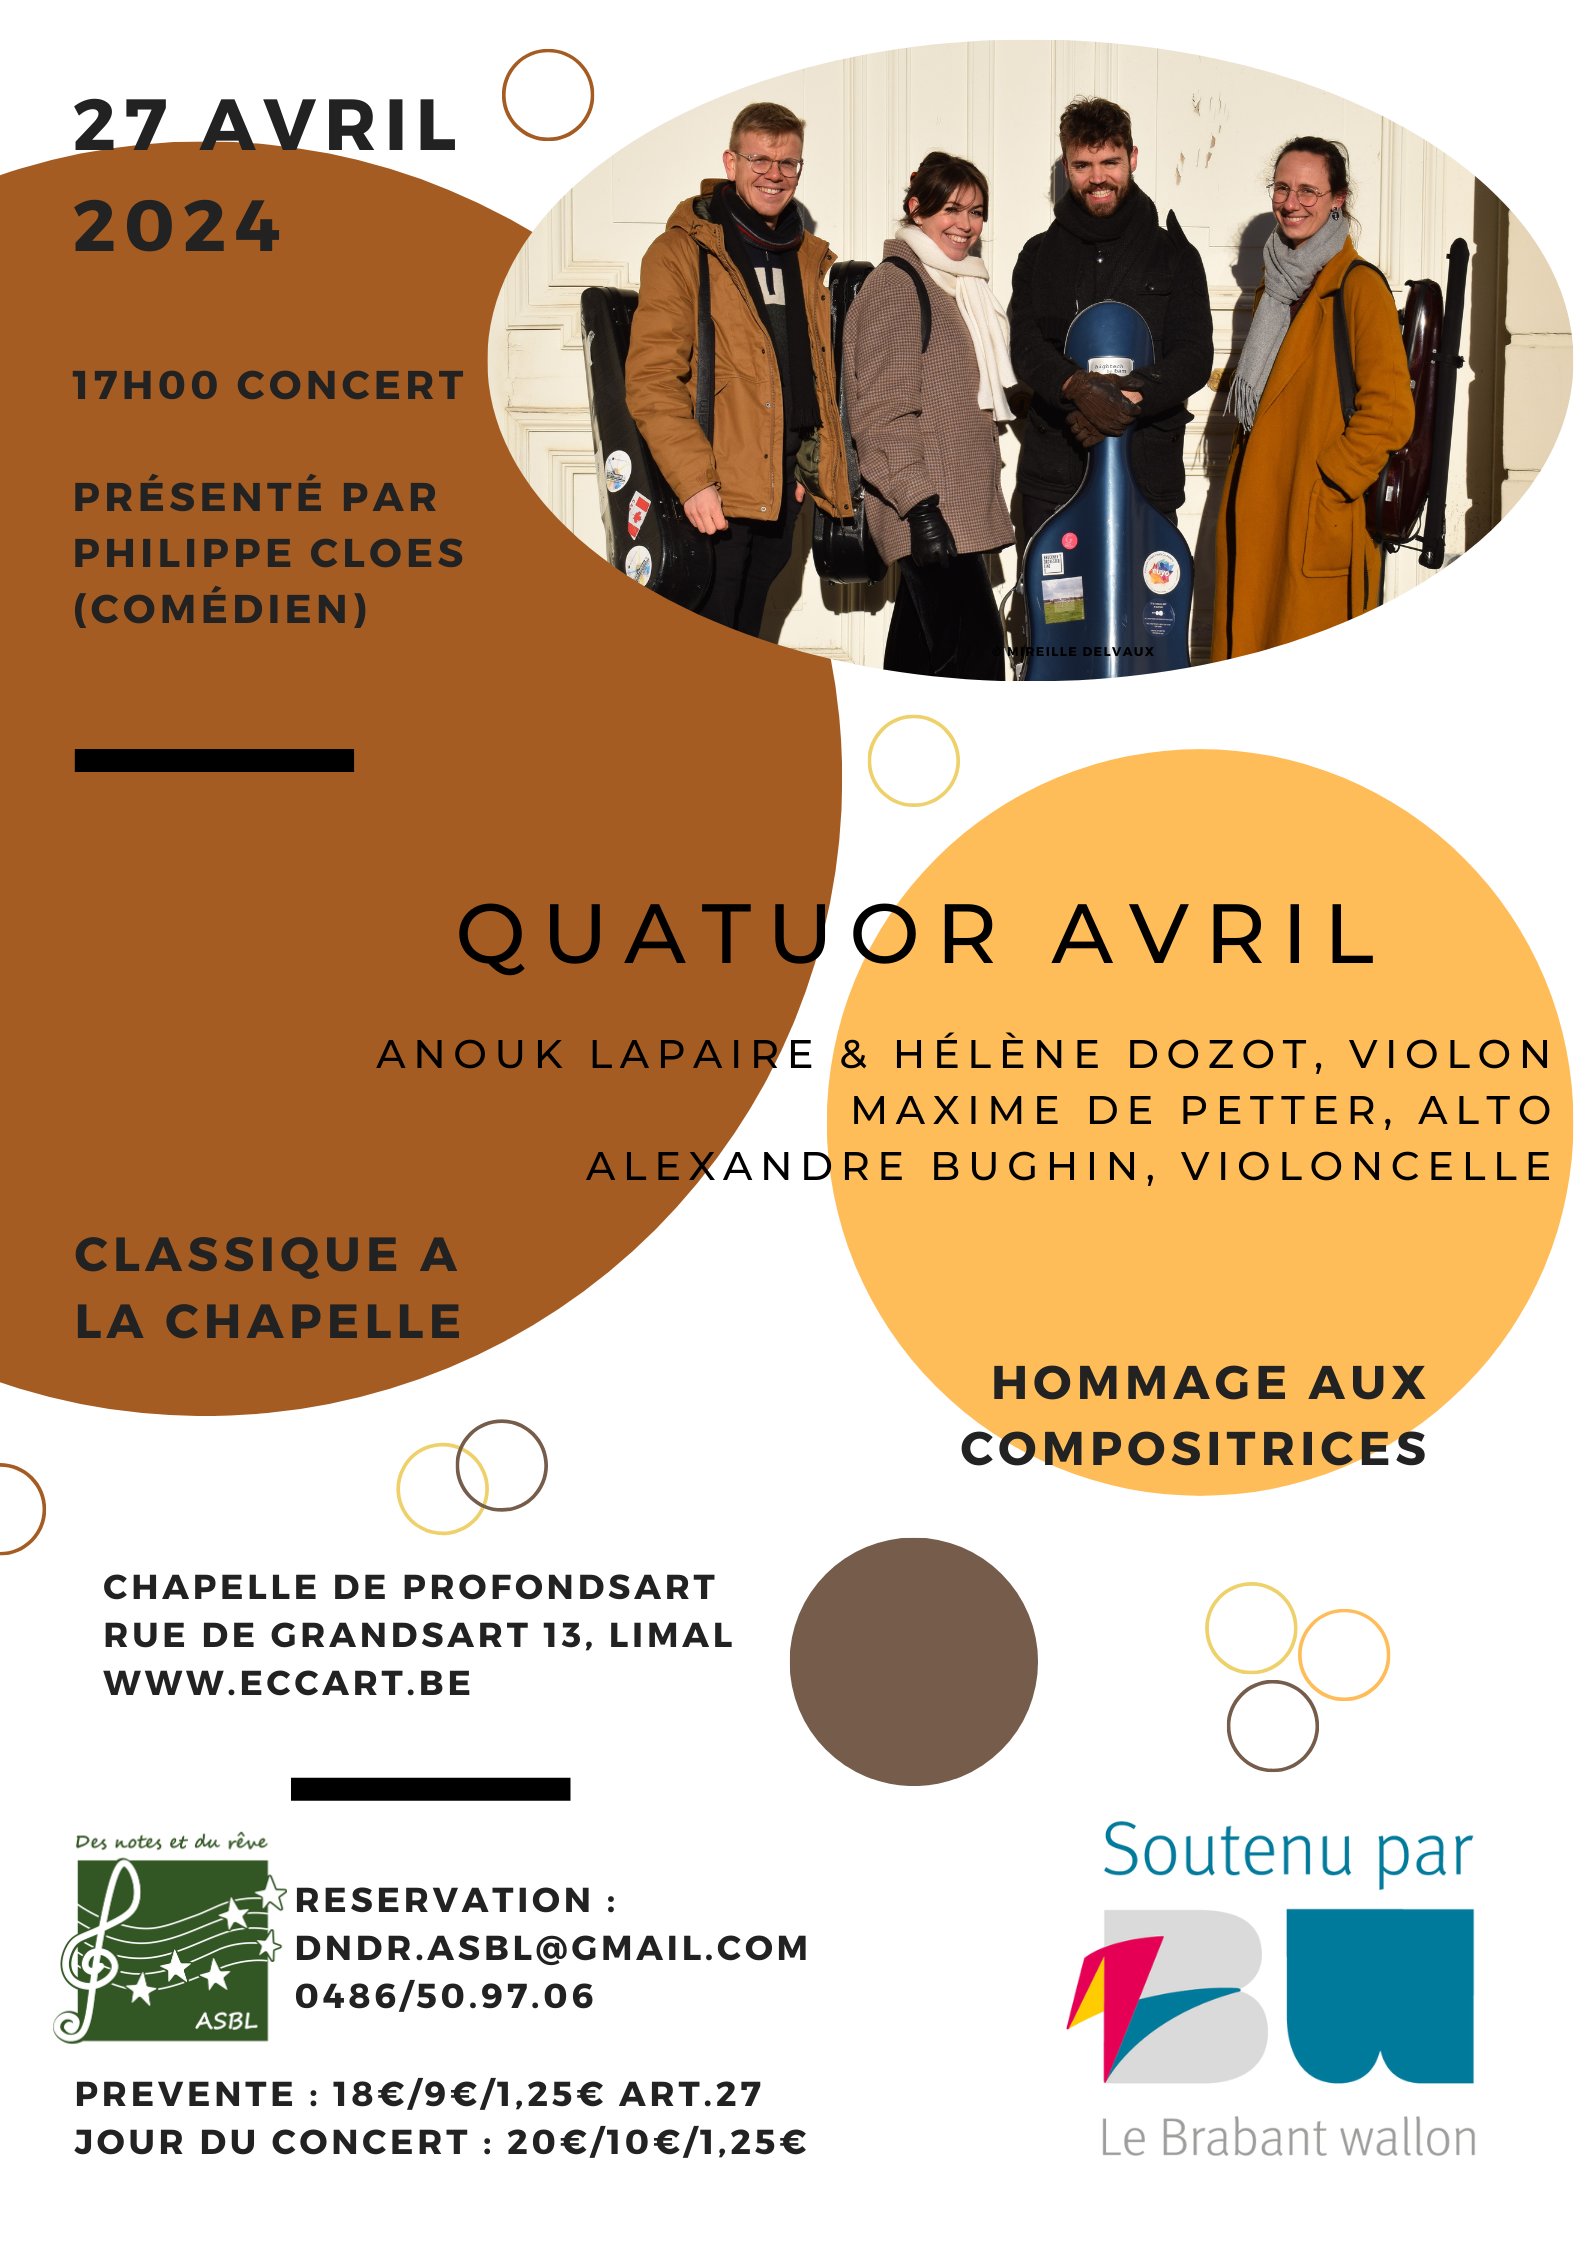 Quatuor Avril (A.Lapaire, H.Dozot, M.De Petter, A.Bughin) – Hommage aux compositrices - Présentation Ph.Cloes (comédien)